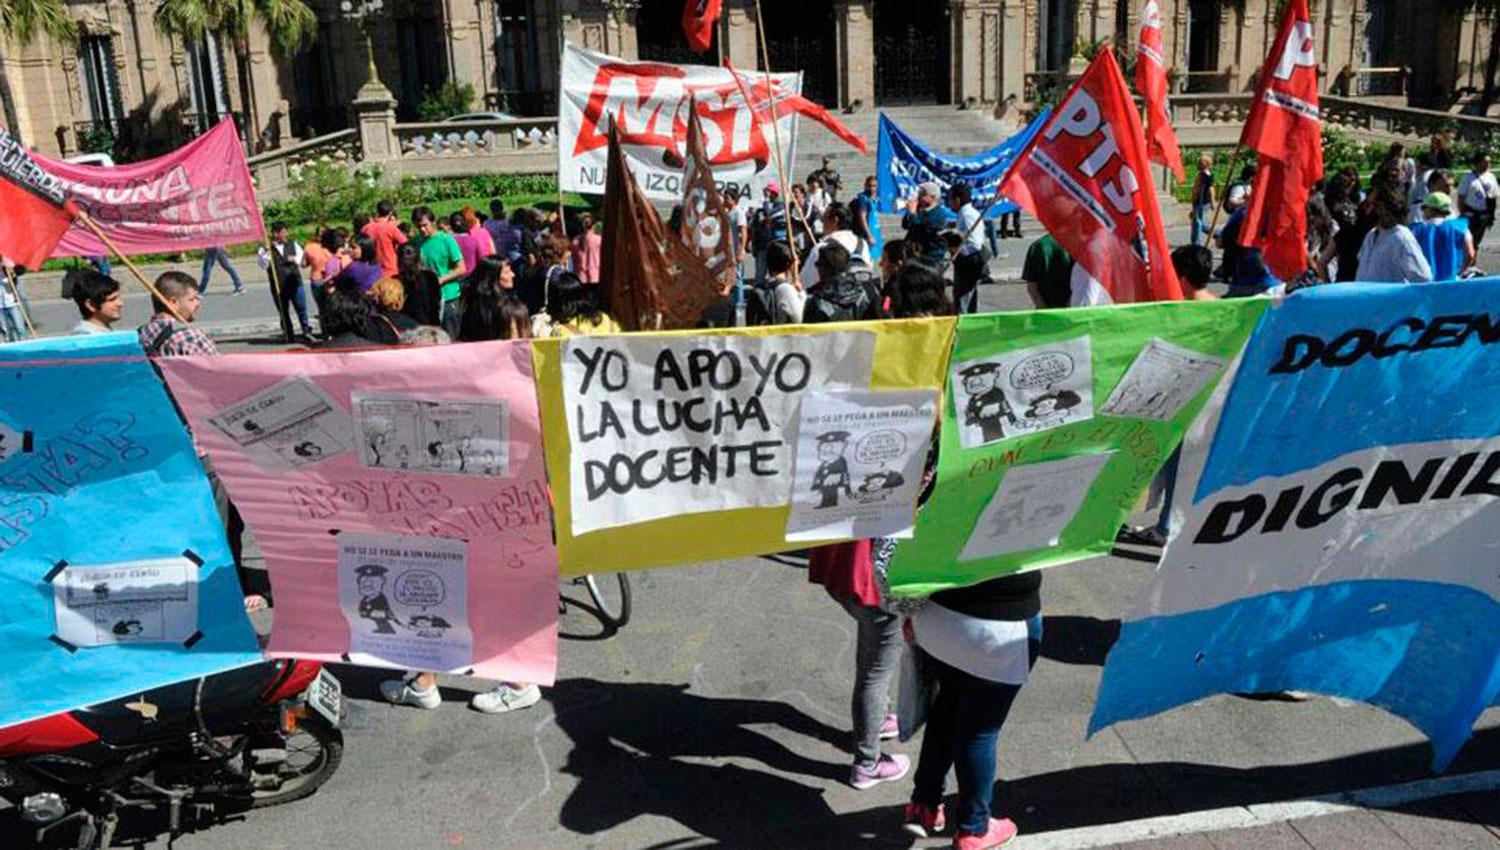 Docentes tucumanos esperan que el Gobierno prontamente los convoque a paritarias: “deben ser libres”